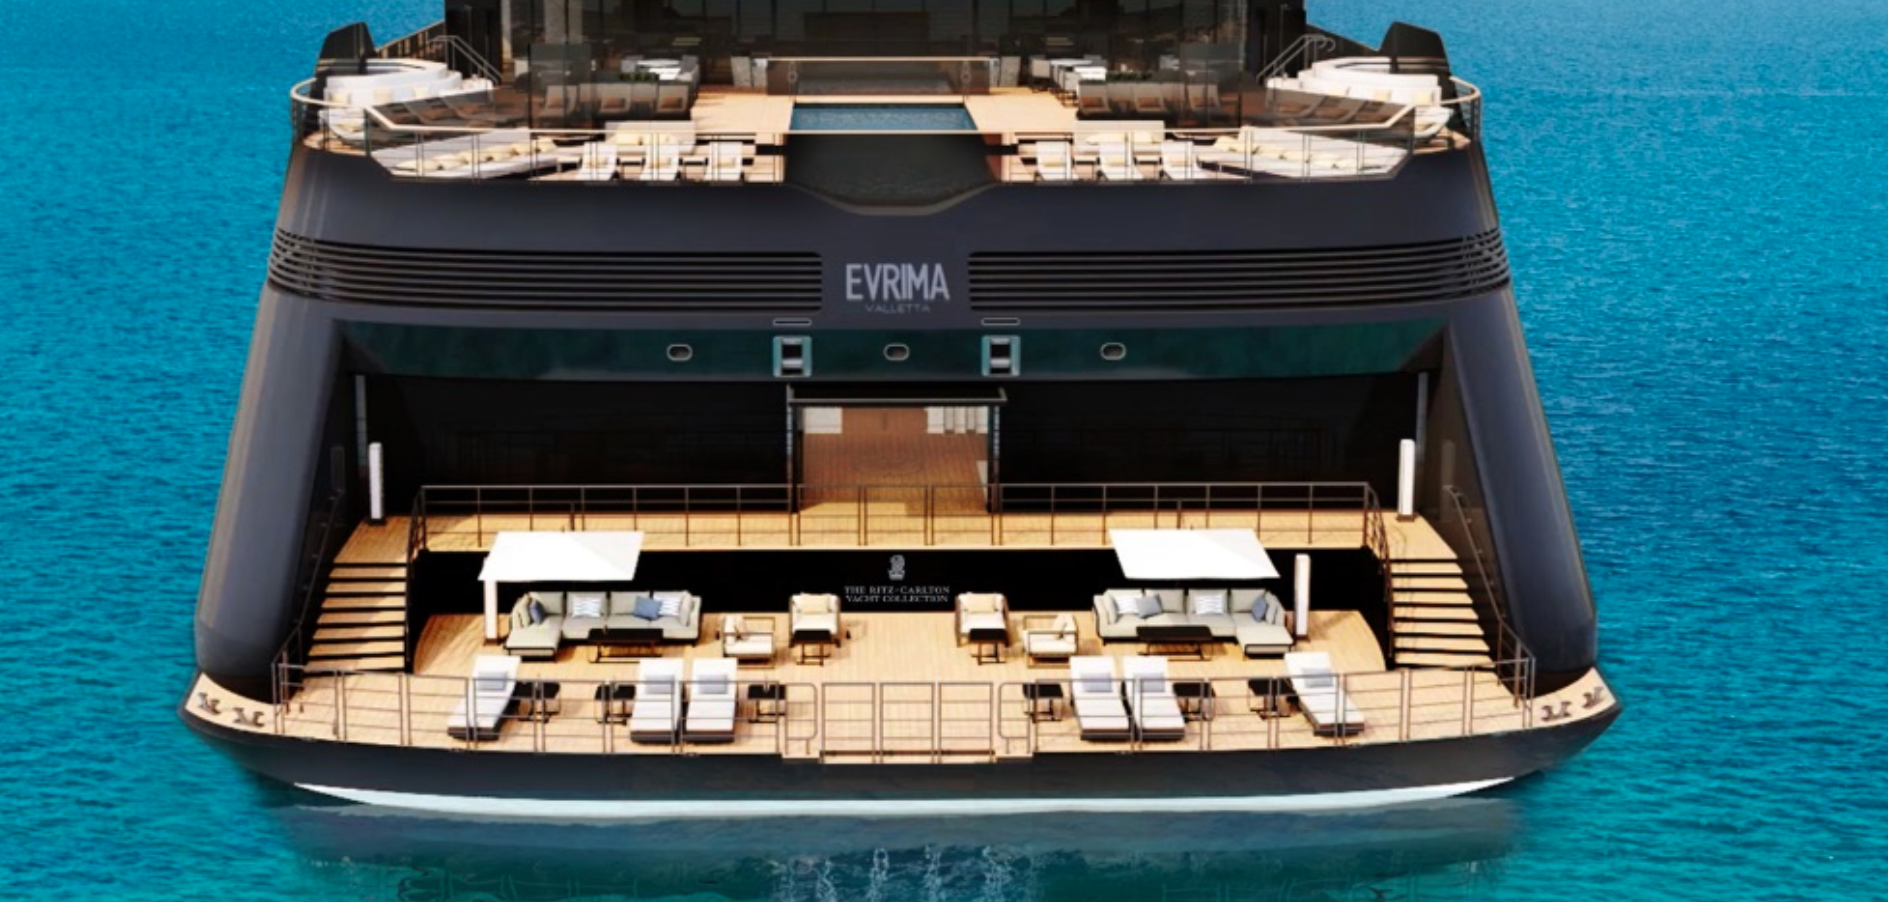 Ritz Carlton Yacht Collection Ship Tour! The Spectacular Evrima